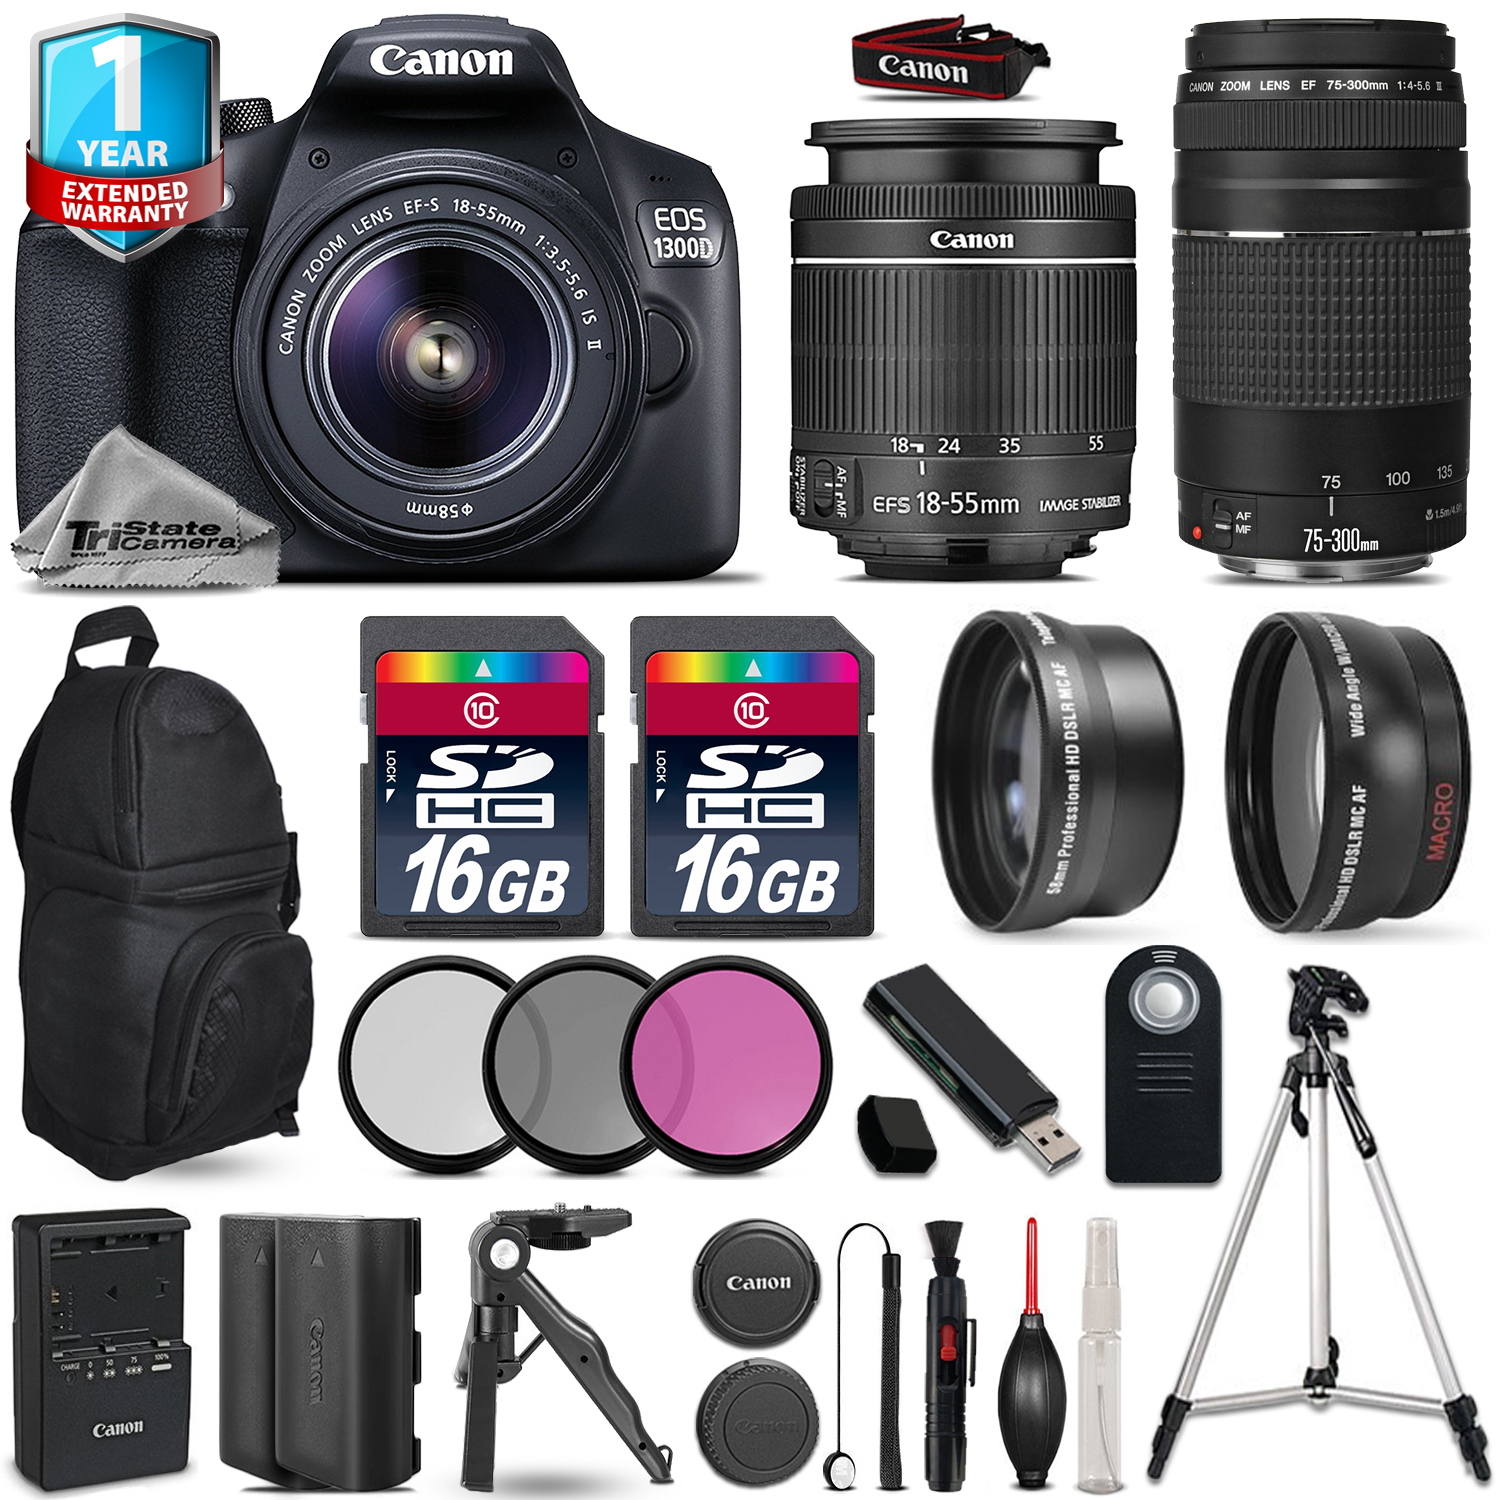 EOS Rebel 1300D Camera + 18-55mm + 75-300mm + EXT BAT +32GB + 1yr Warranty *FREE SHIPPING*